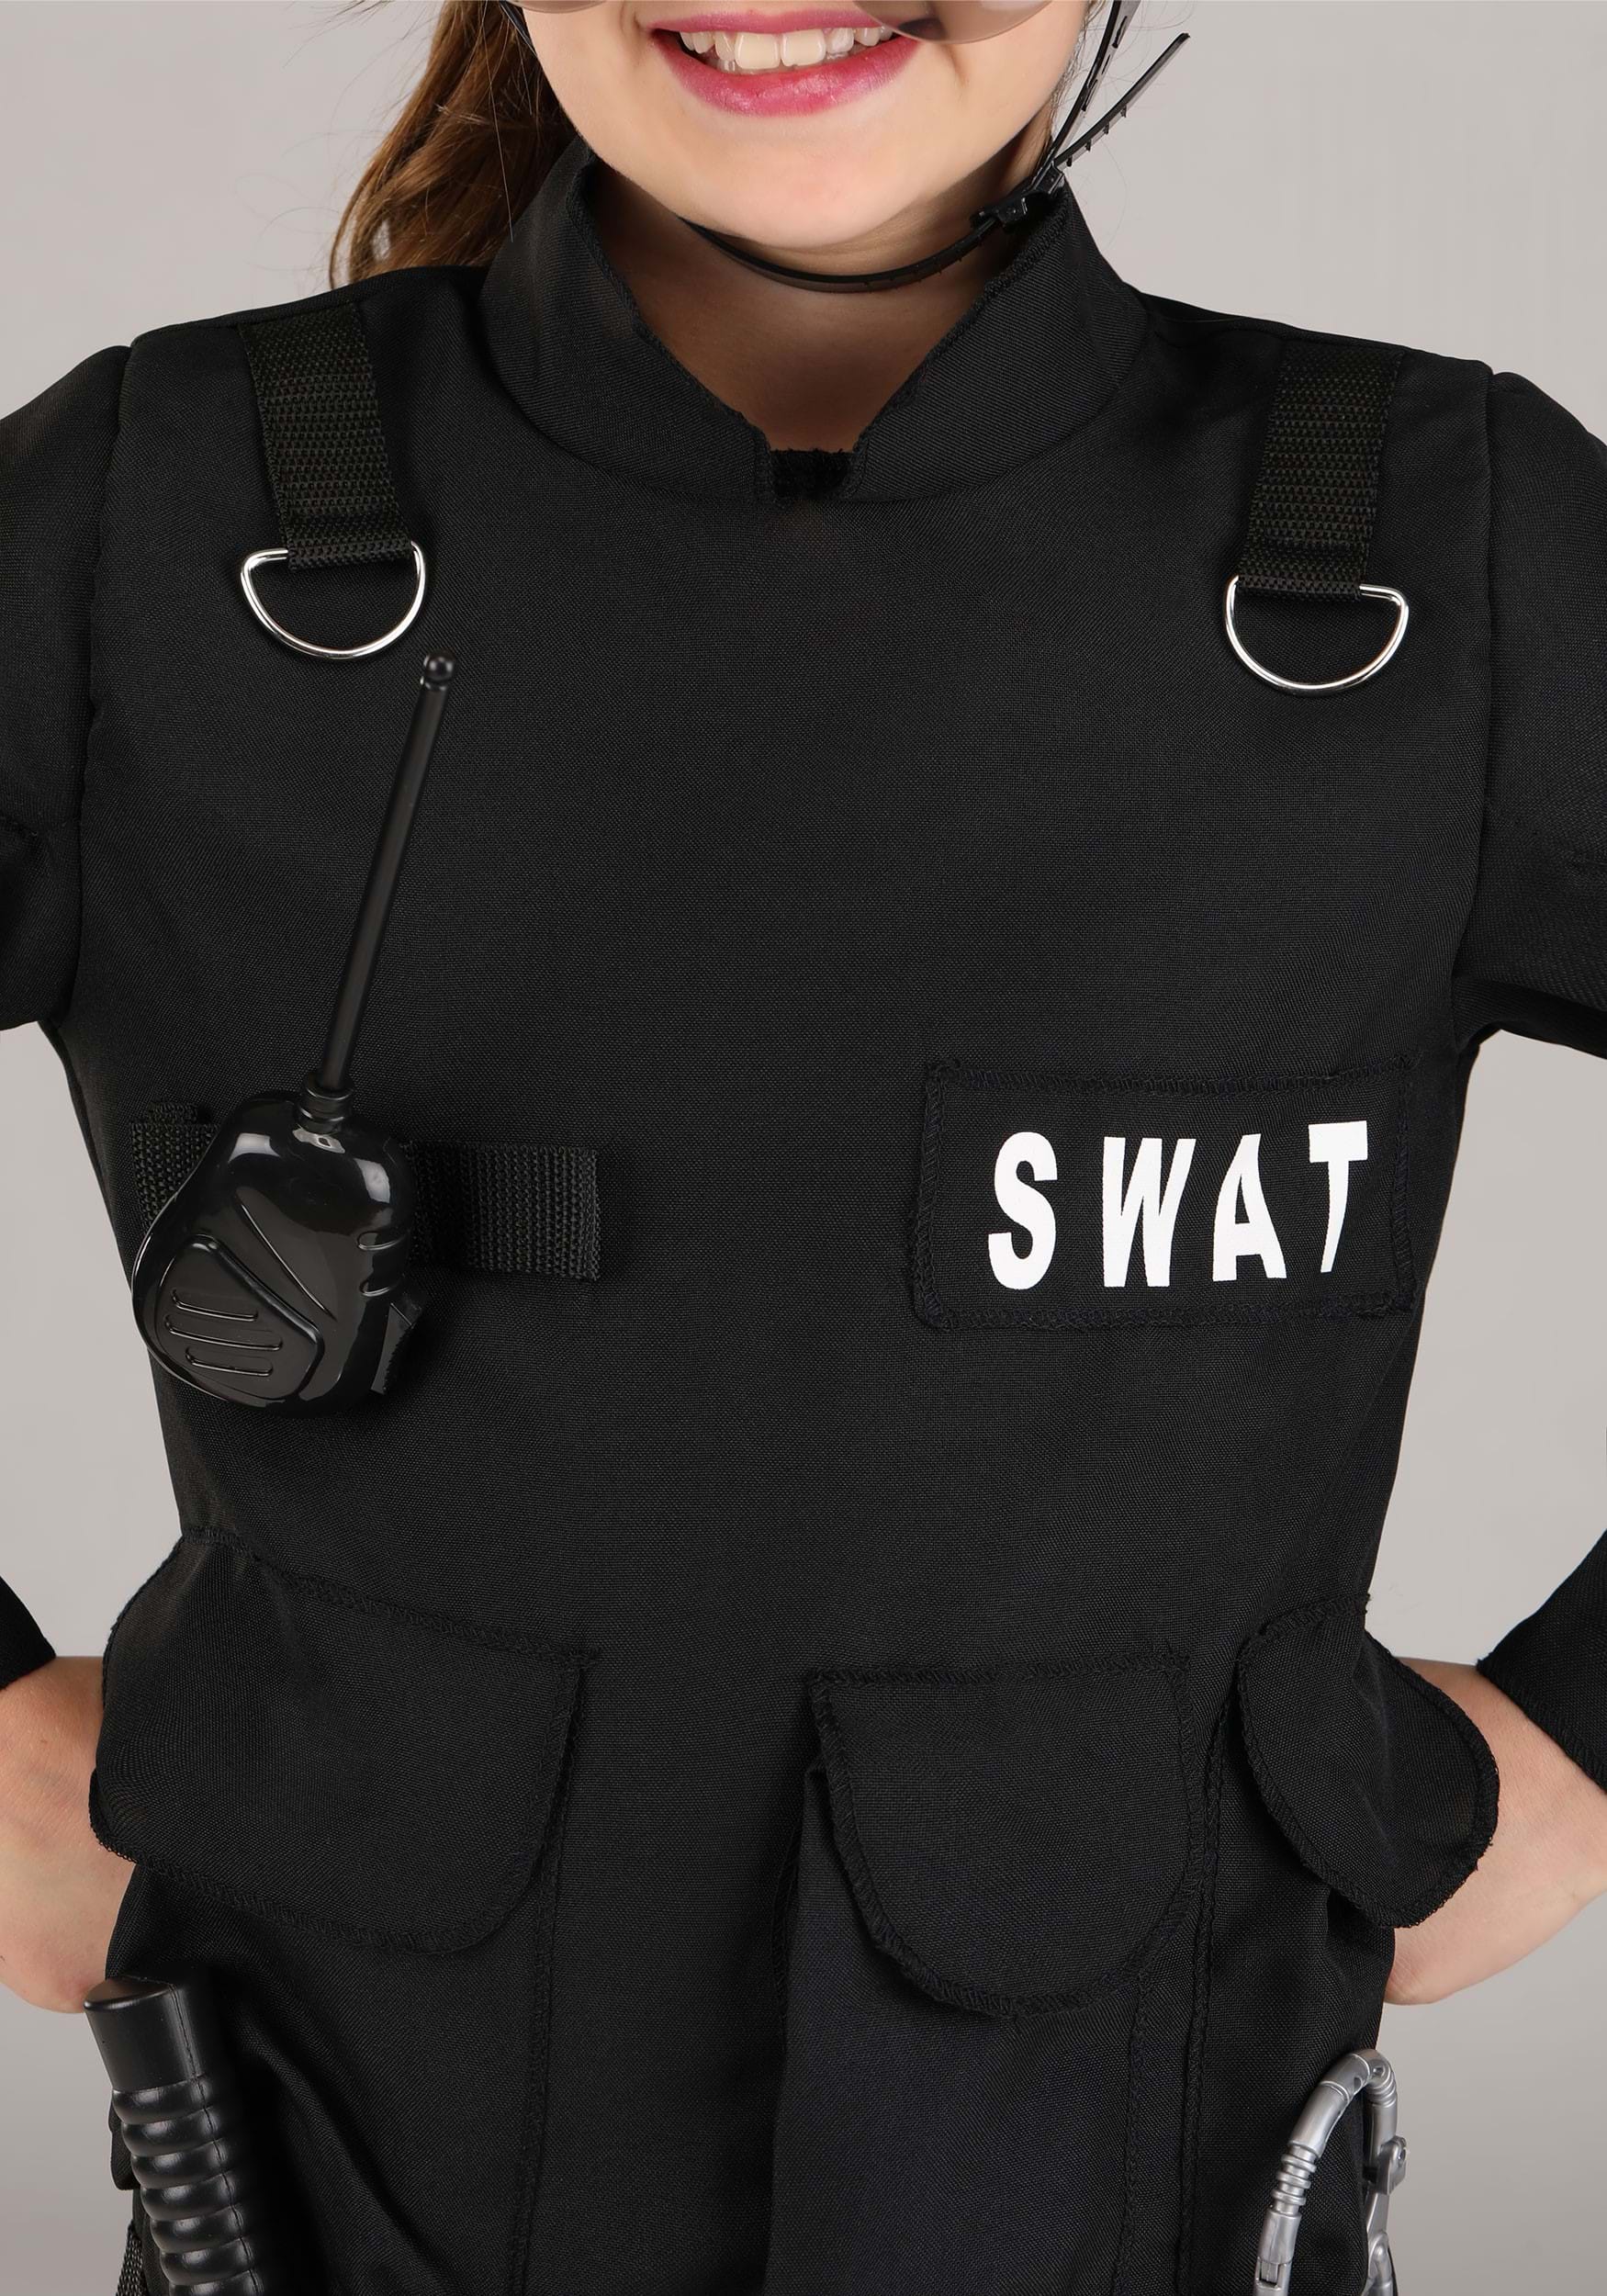 Disfraz de comando de SWAT para niños, M, Negro